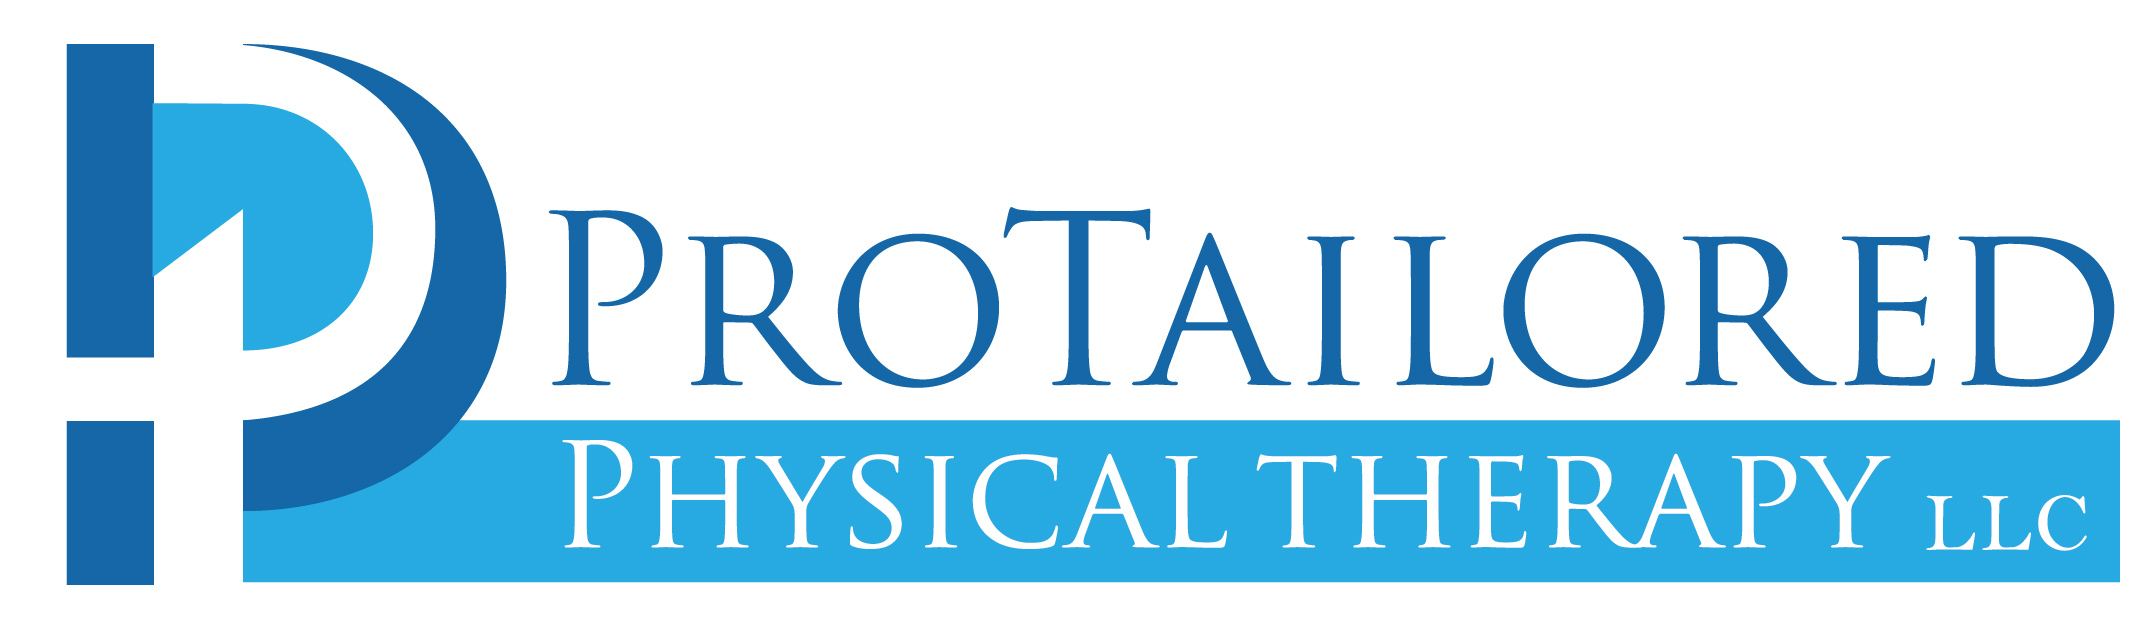 ProTailoredPT Logo